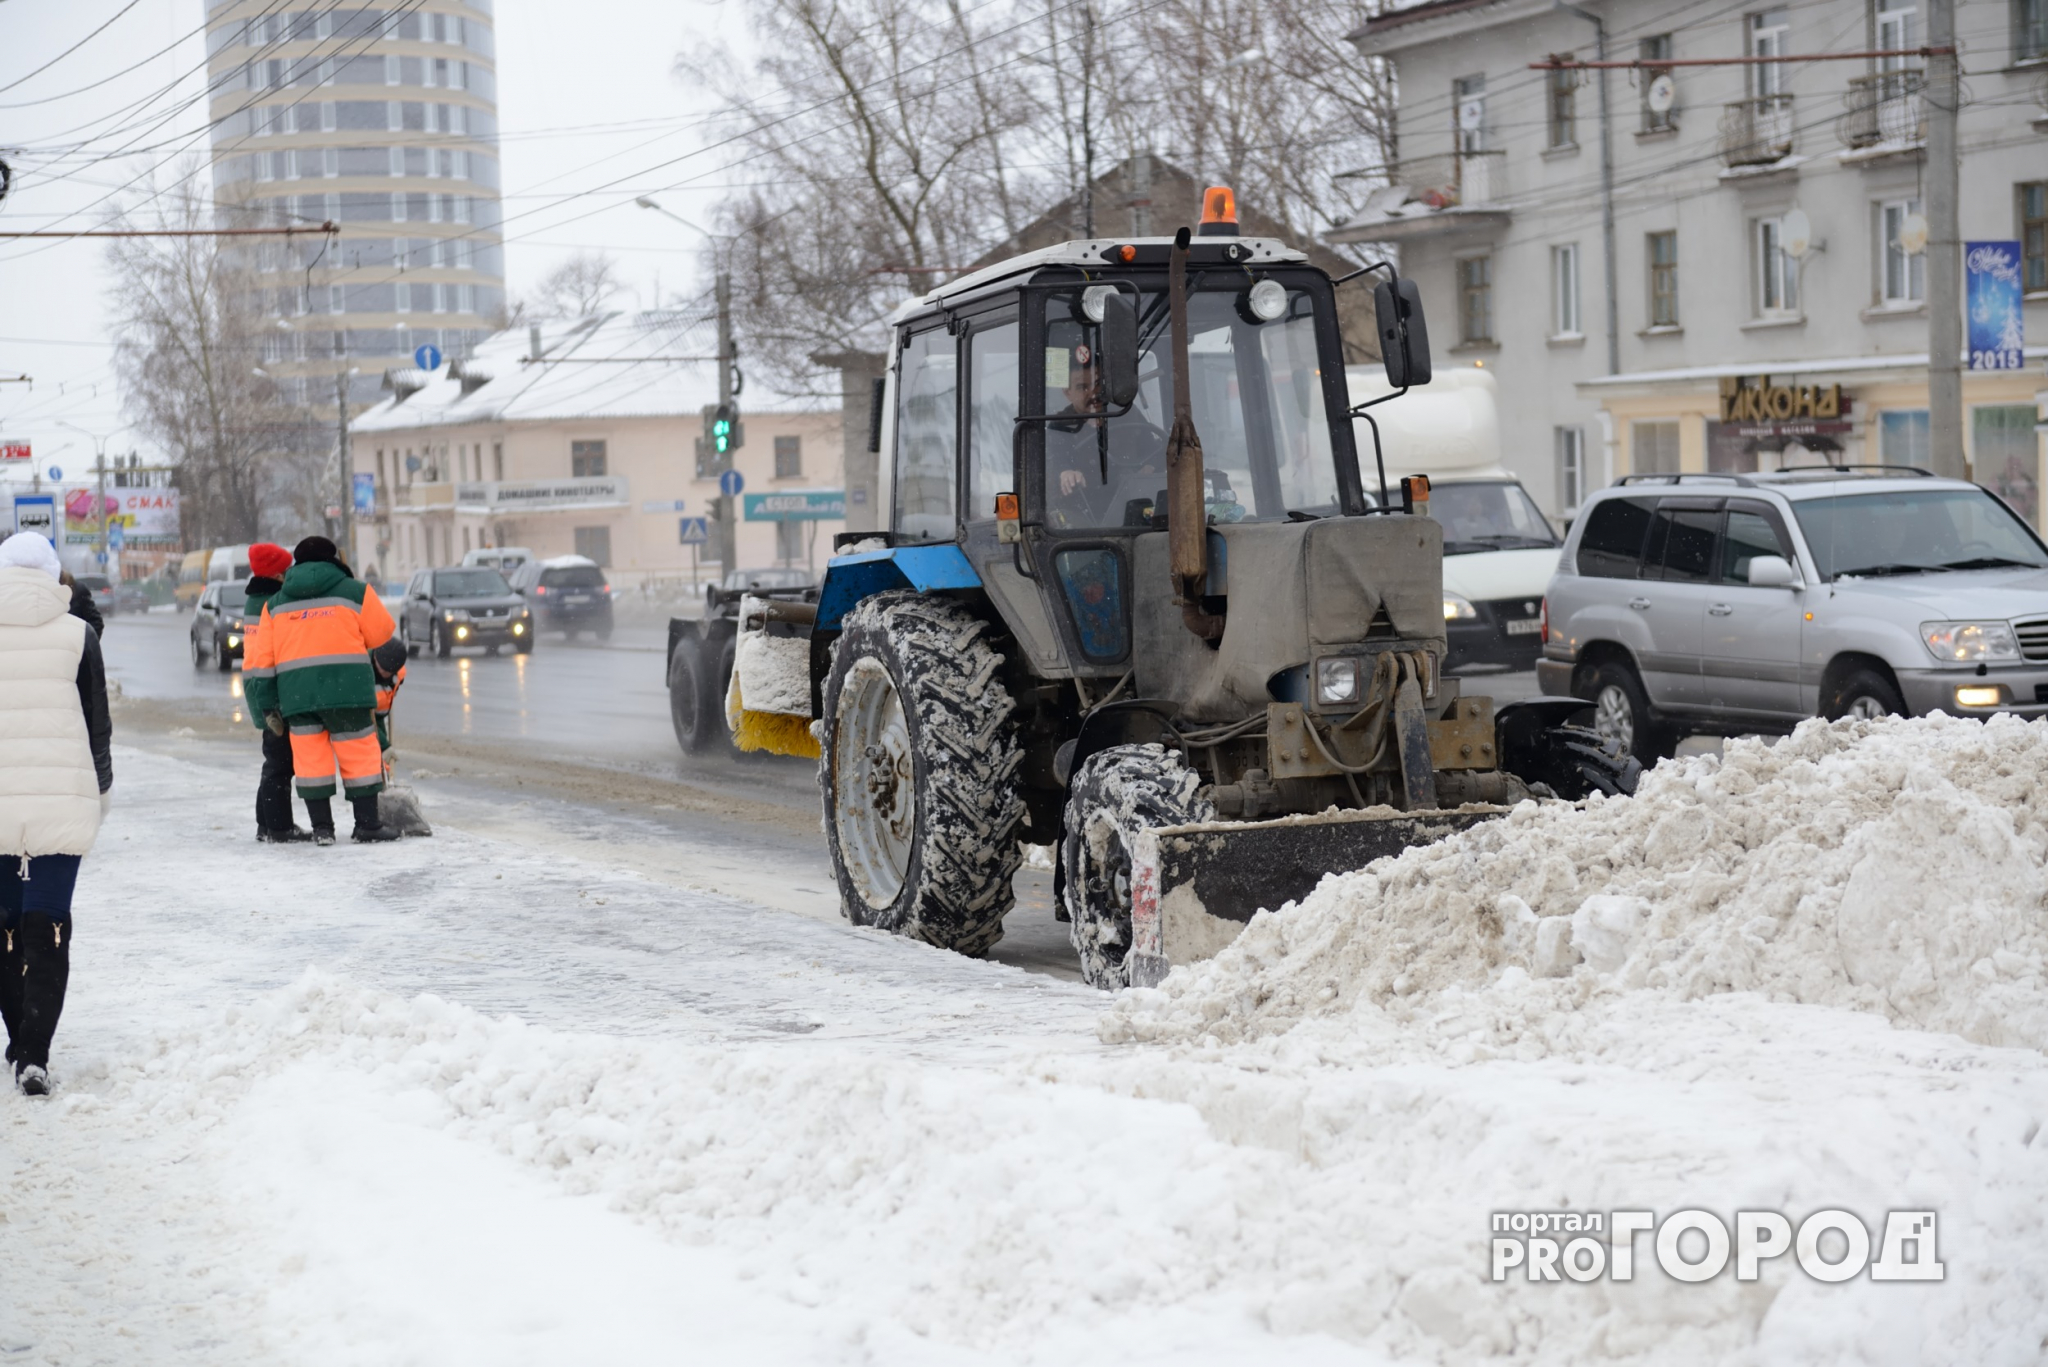 Опубликован список улиц Кирова, с которых в выходные будут вывозить снег